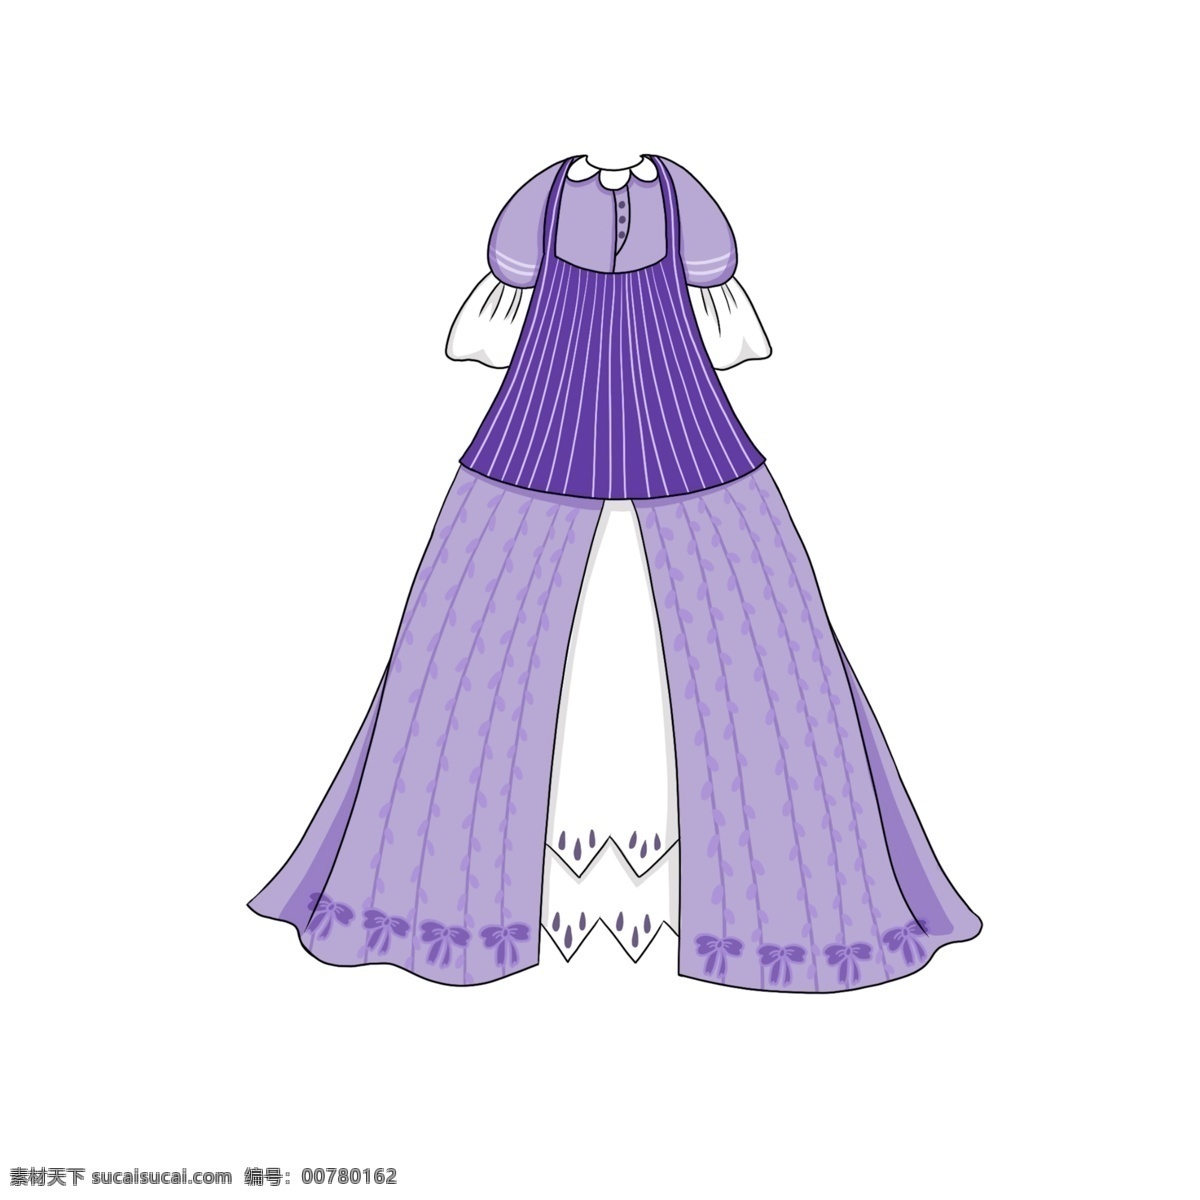 服饰 公主 裙 卡通 免 扣 服装 衣服 公主裙 裙子 蛋糕裙 可爱 免扣 紫色系 少女 表演服 蓬蓬裙